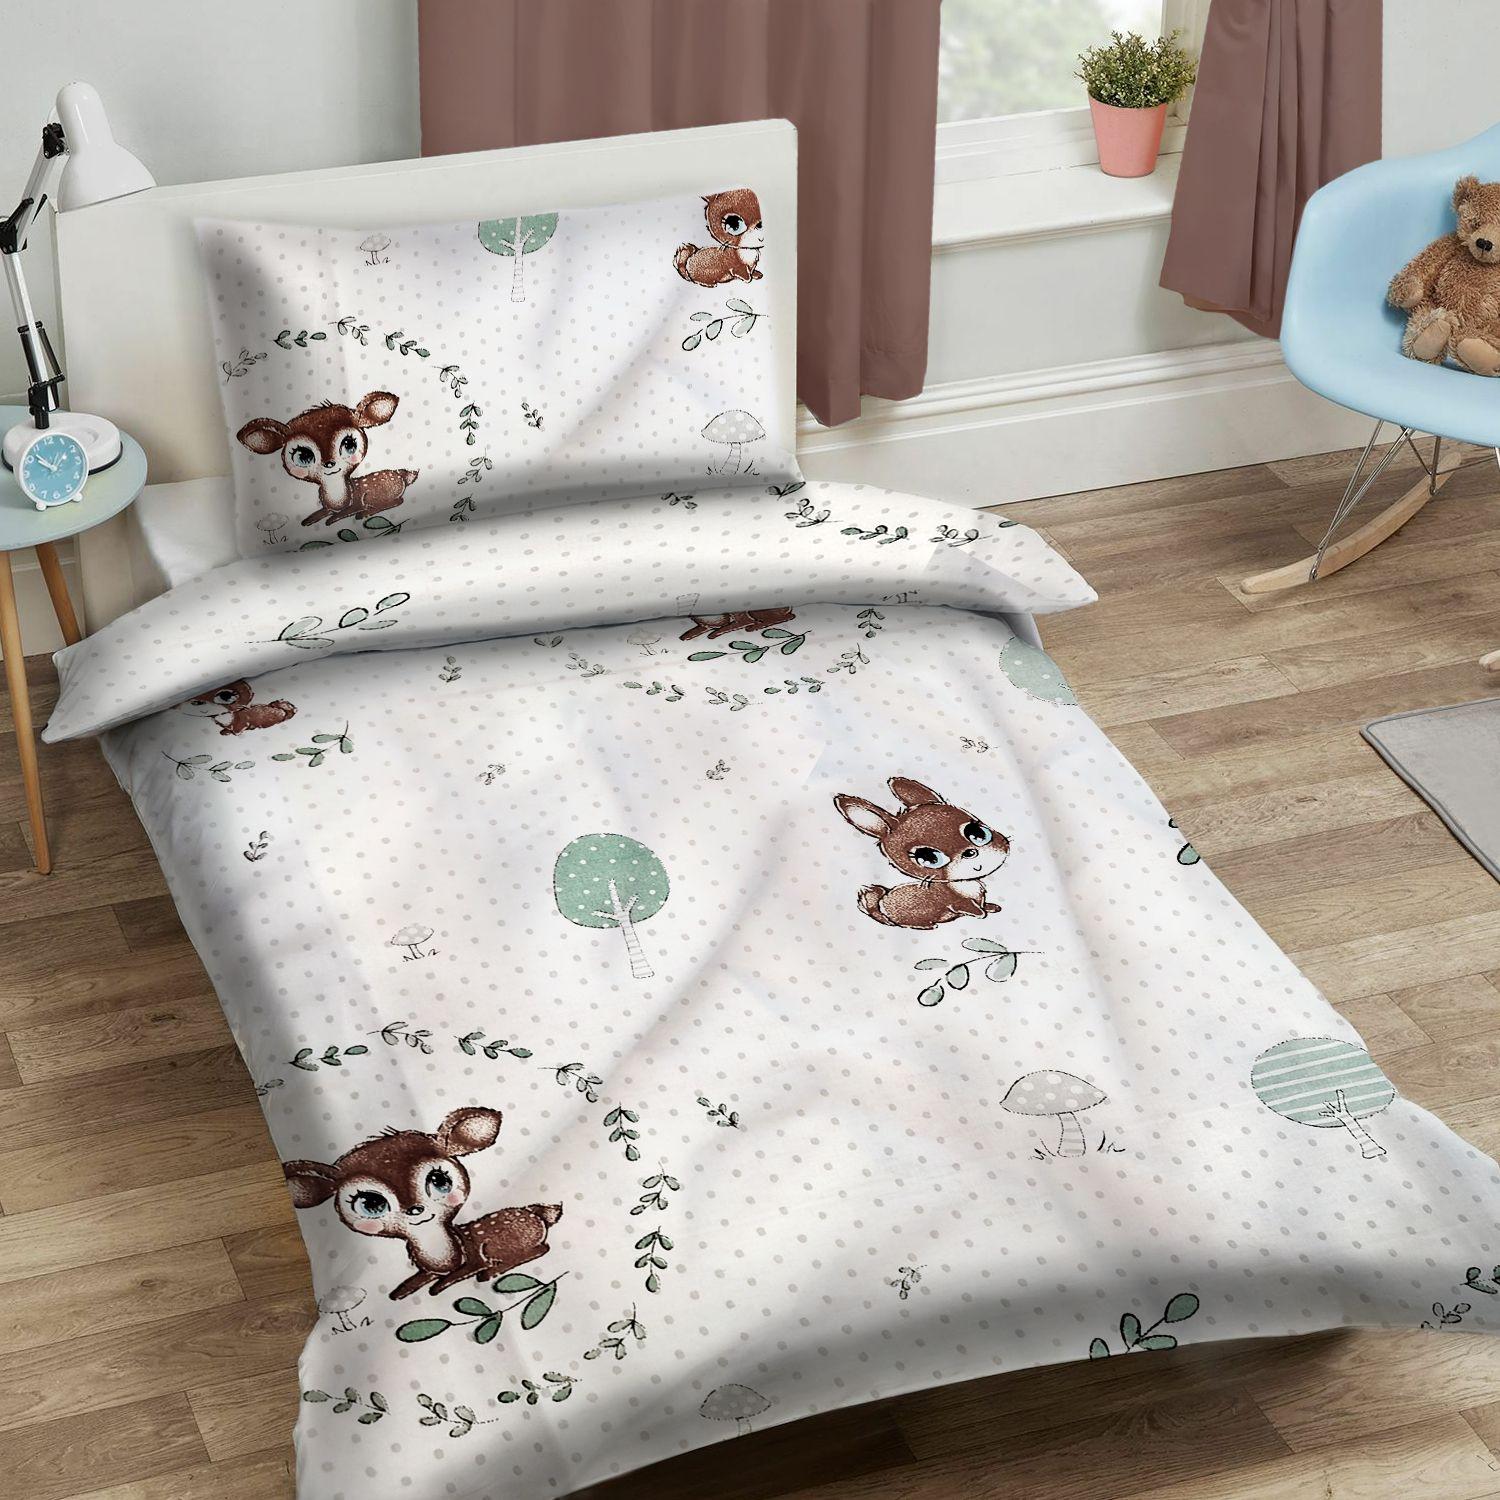 Set of children's bedding 90x120cm - forest animals